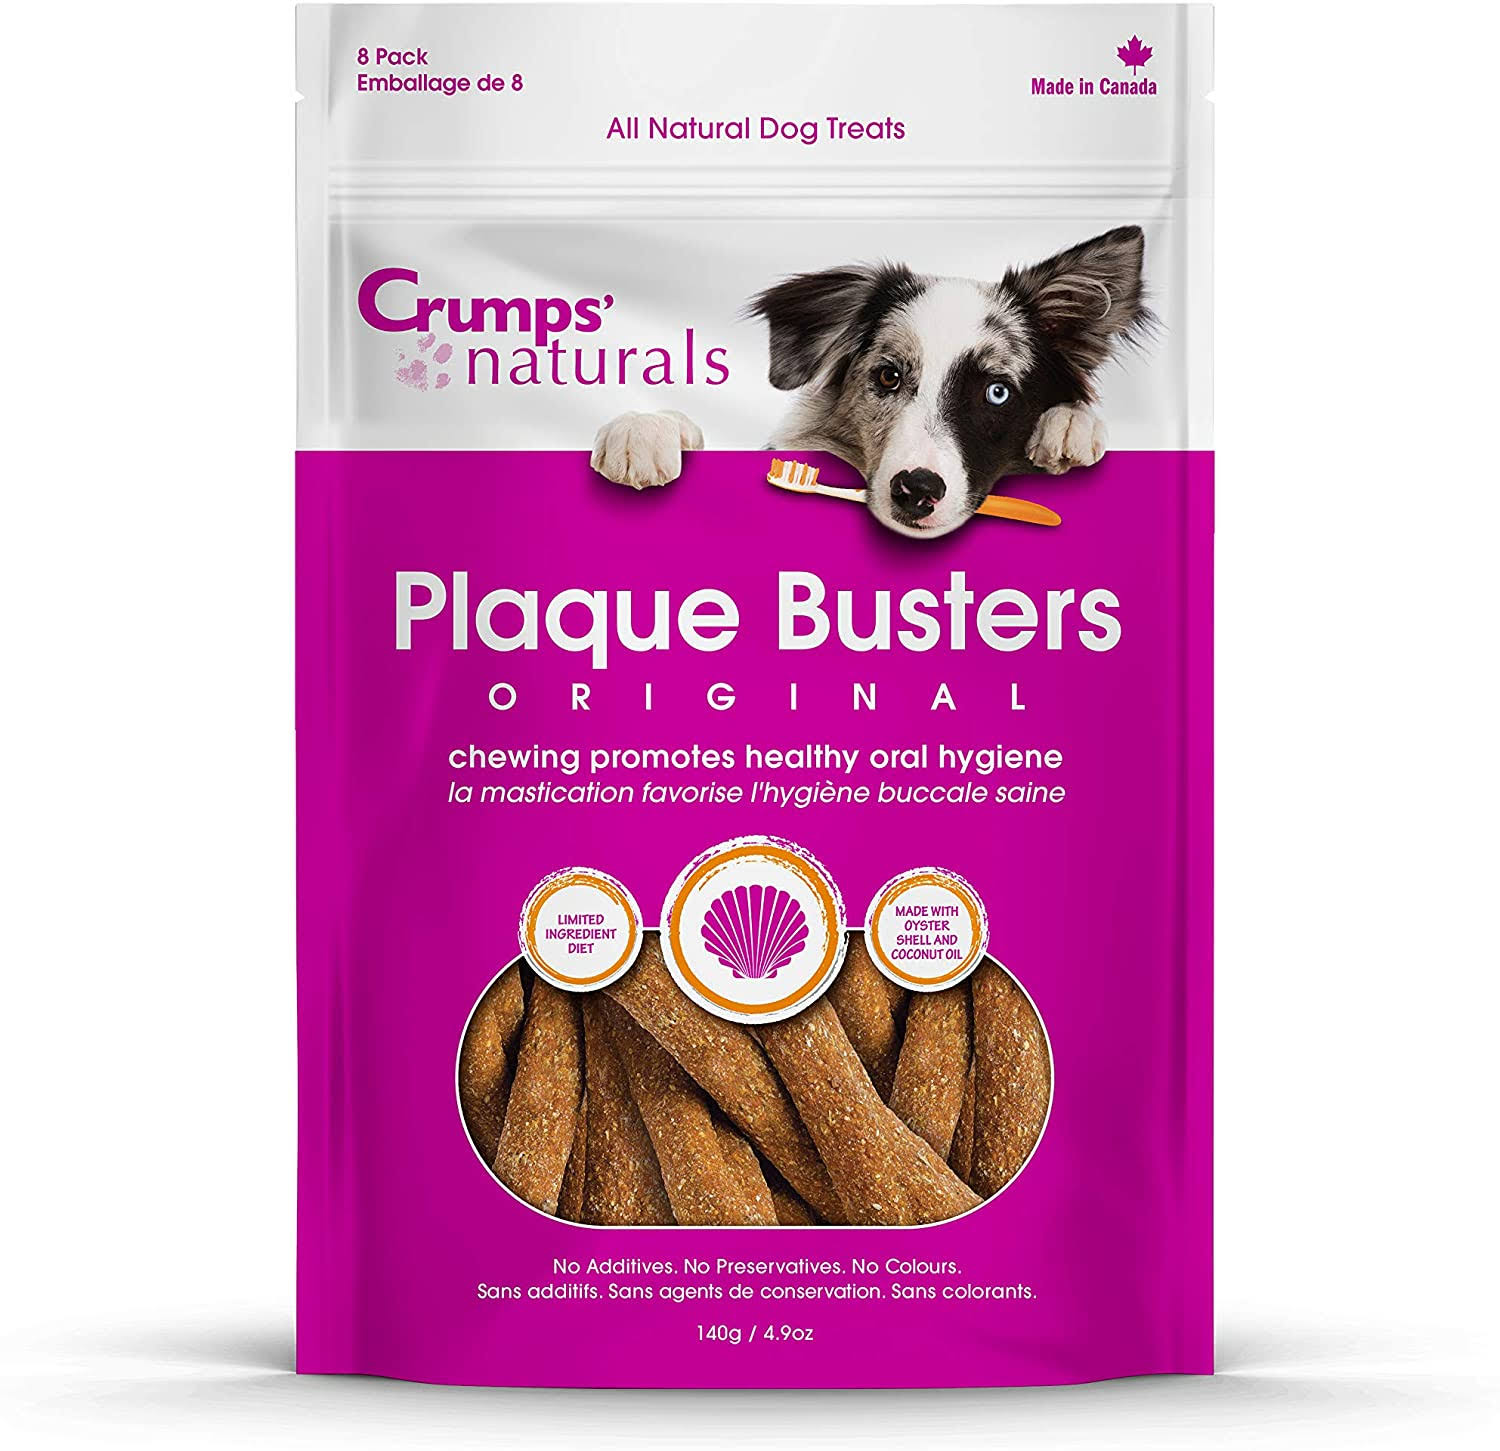 Crumps' Naturals Original Plaque Busters, 7''- 8 Pack